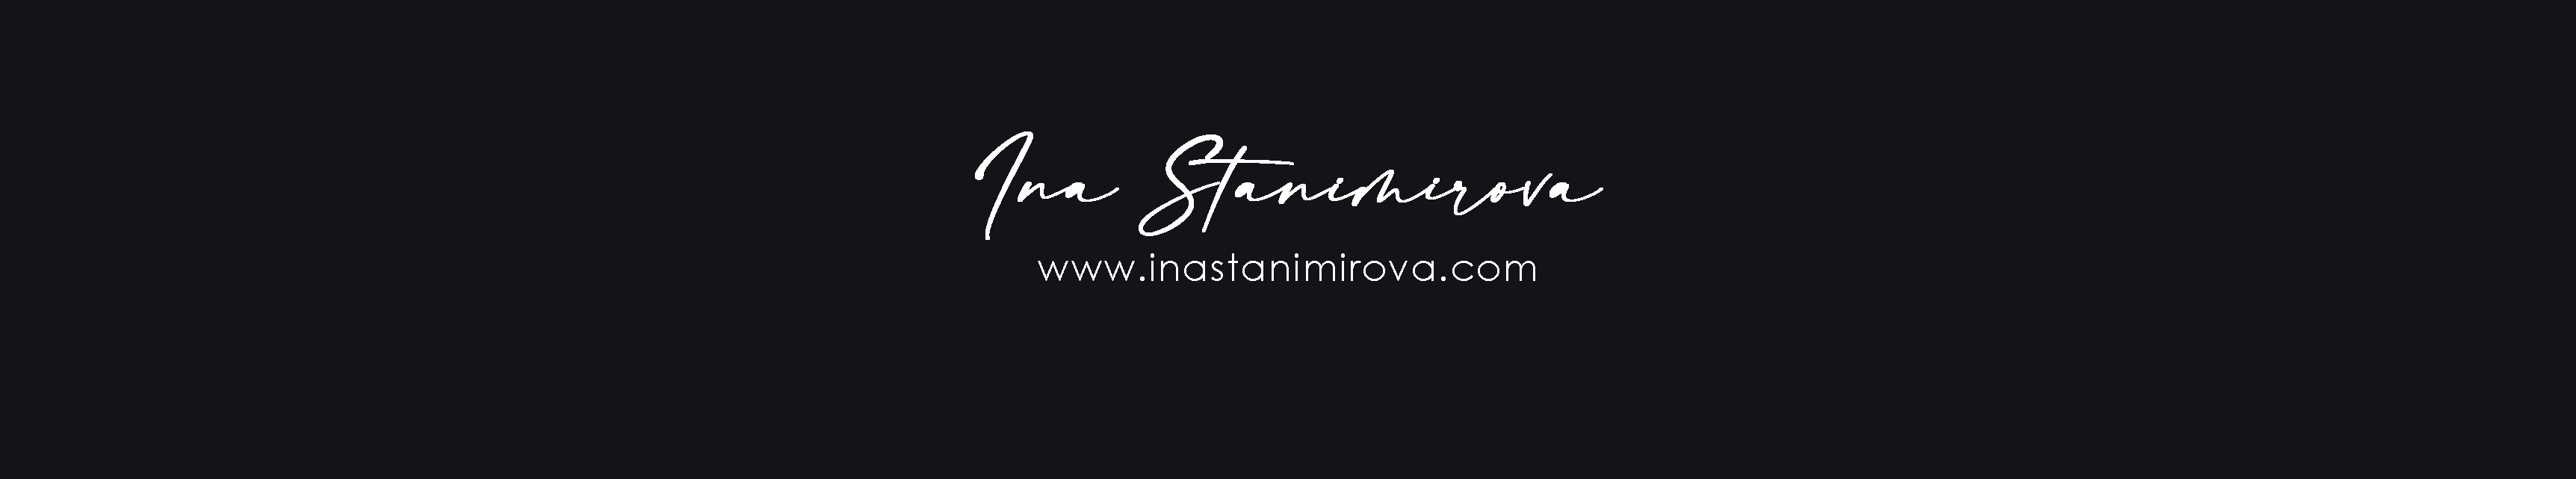 InaStanimirova banner